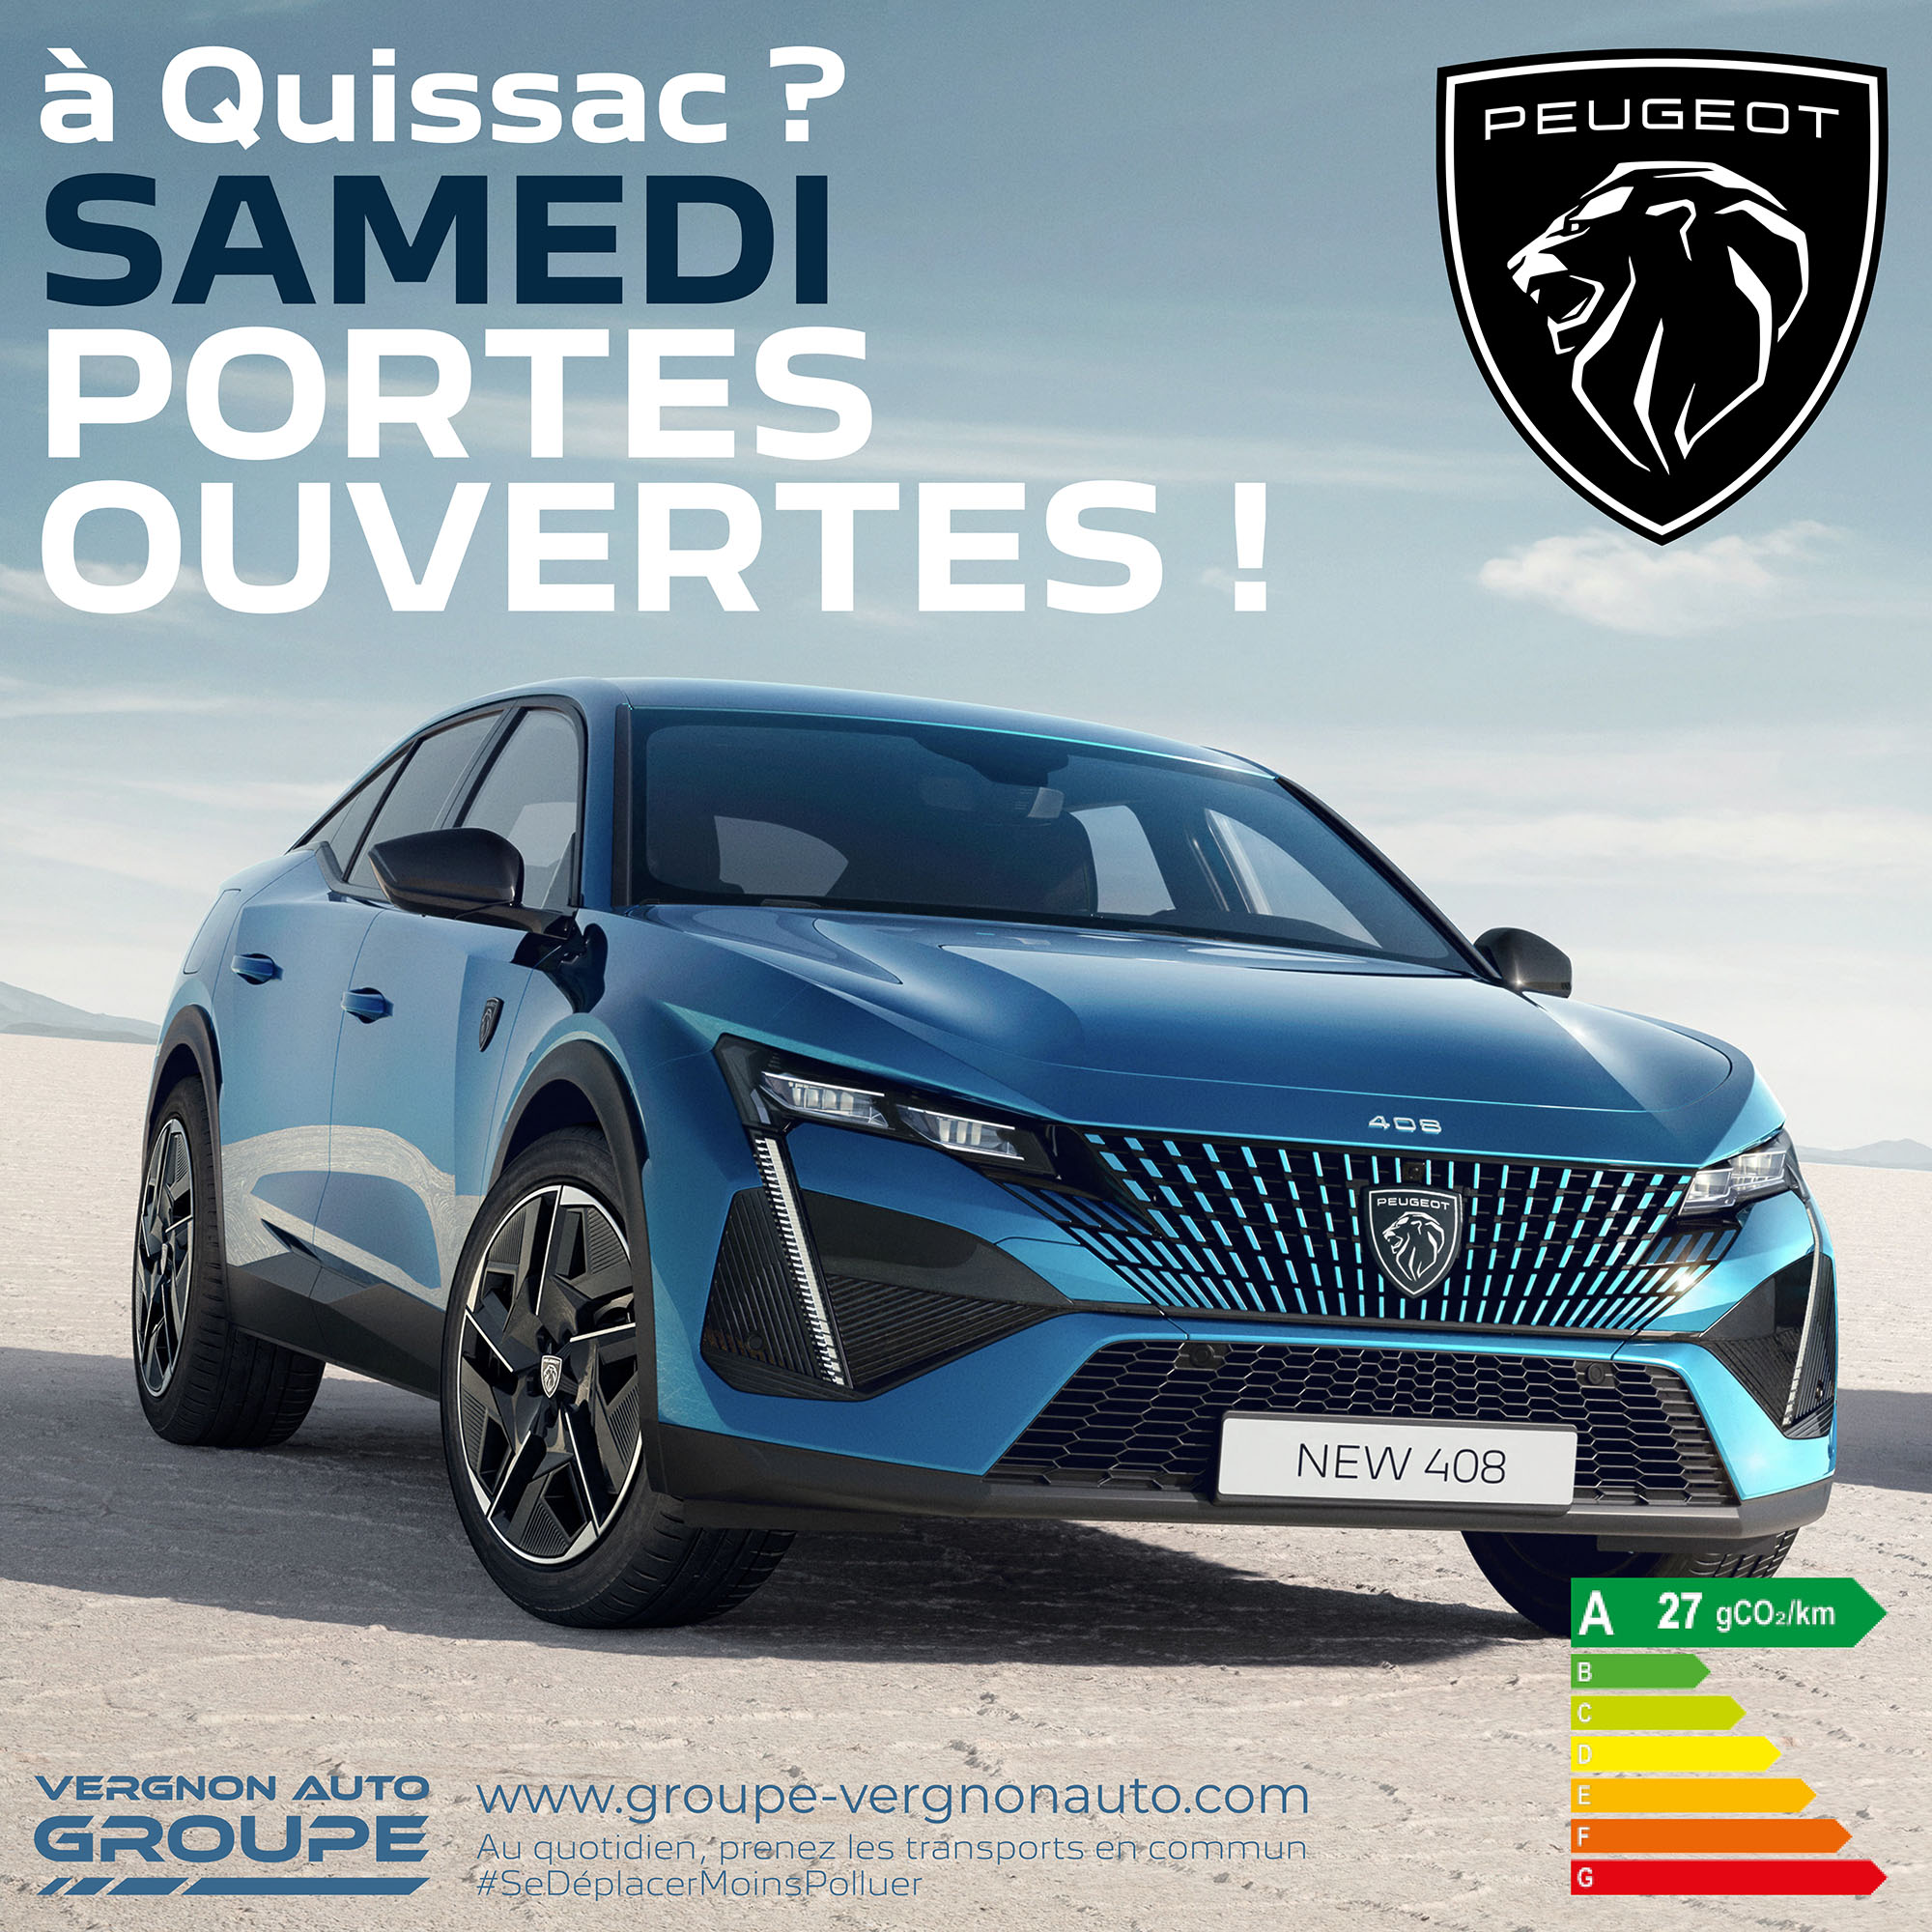 Samedi 15 octobre 2022, venez profiter à Quissac (Gard - 30) de nos portes ouvertes Peugeot !